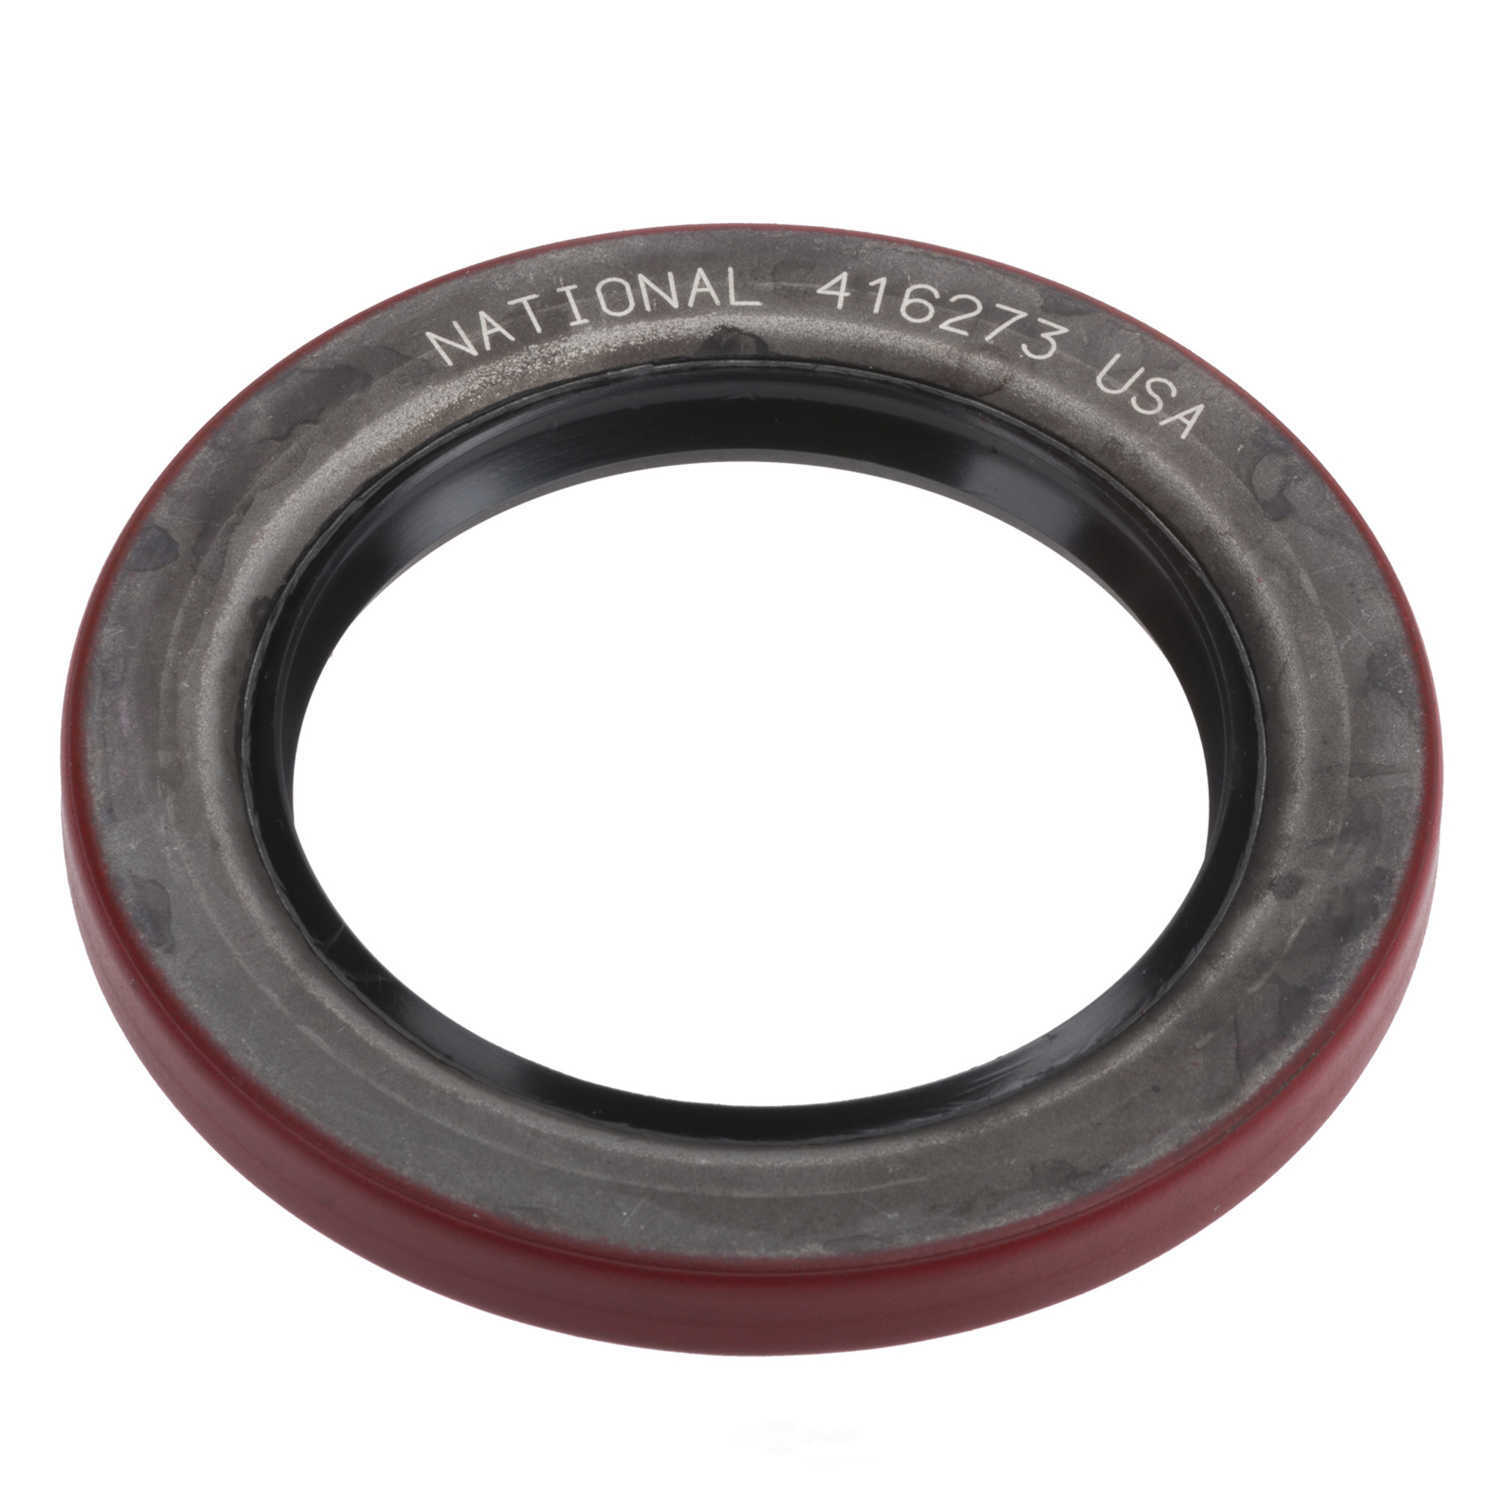 NATIONAL SEALS - Wheel Seal - NAT 416273